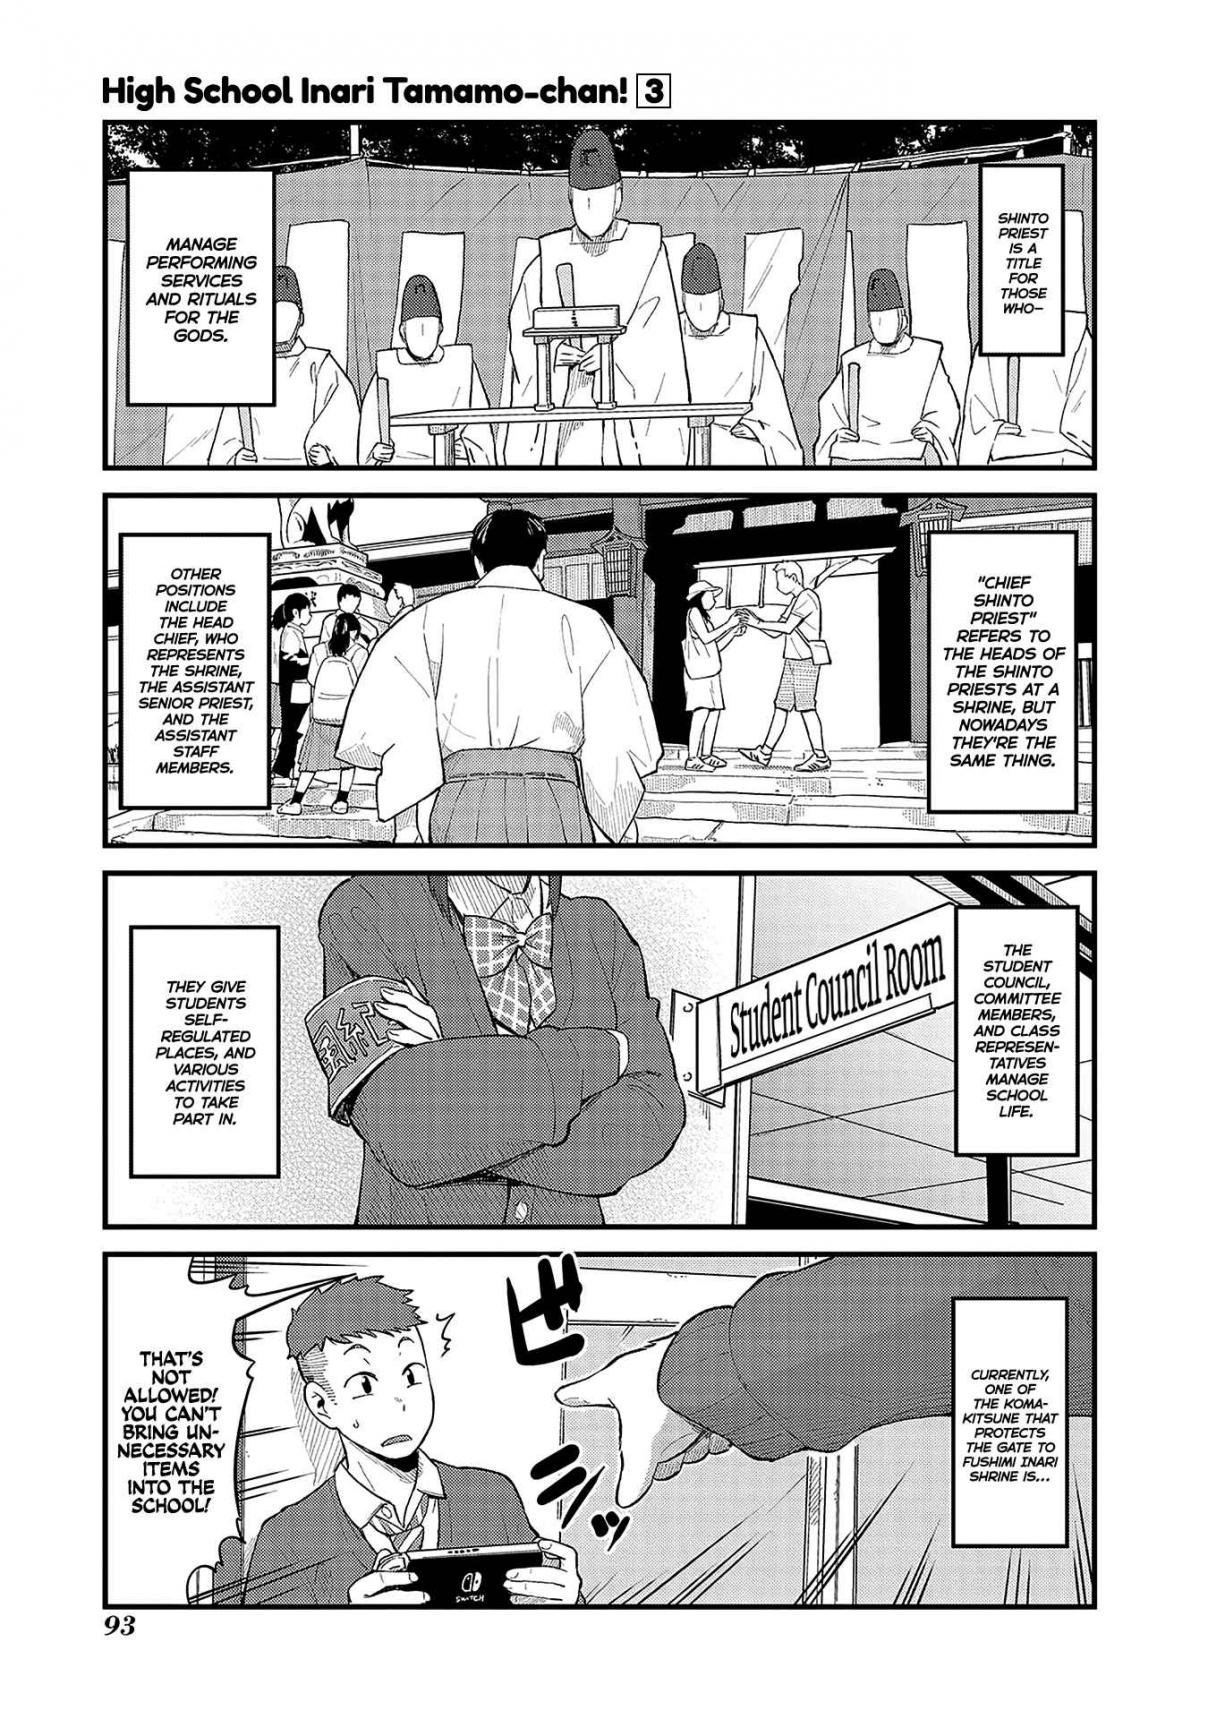 High School Inari Tamamo chan! Vol. 3 Ch. 42